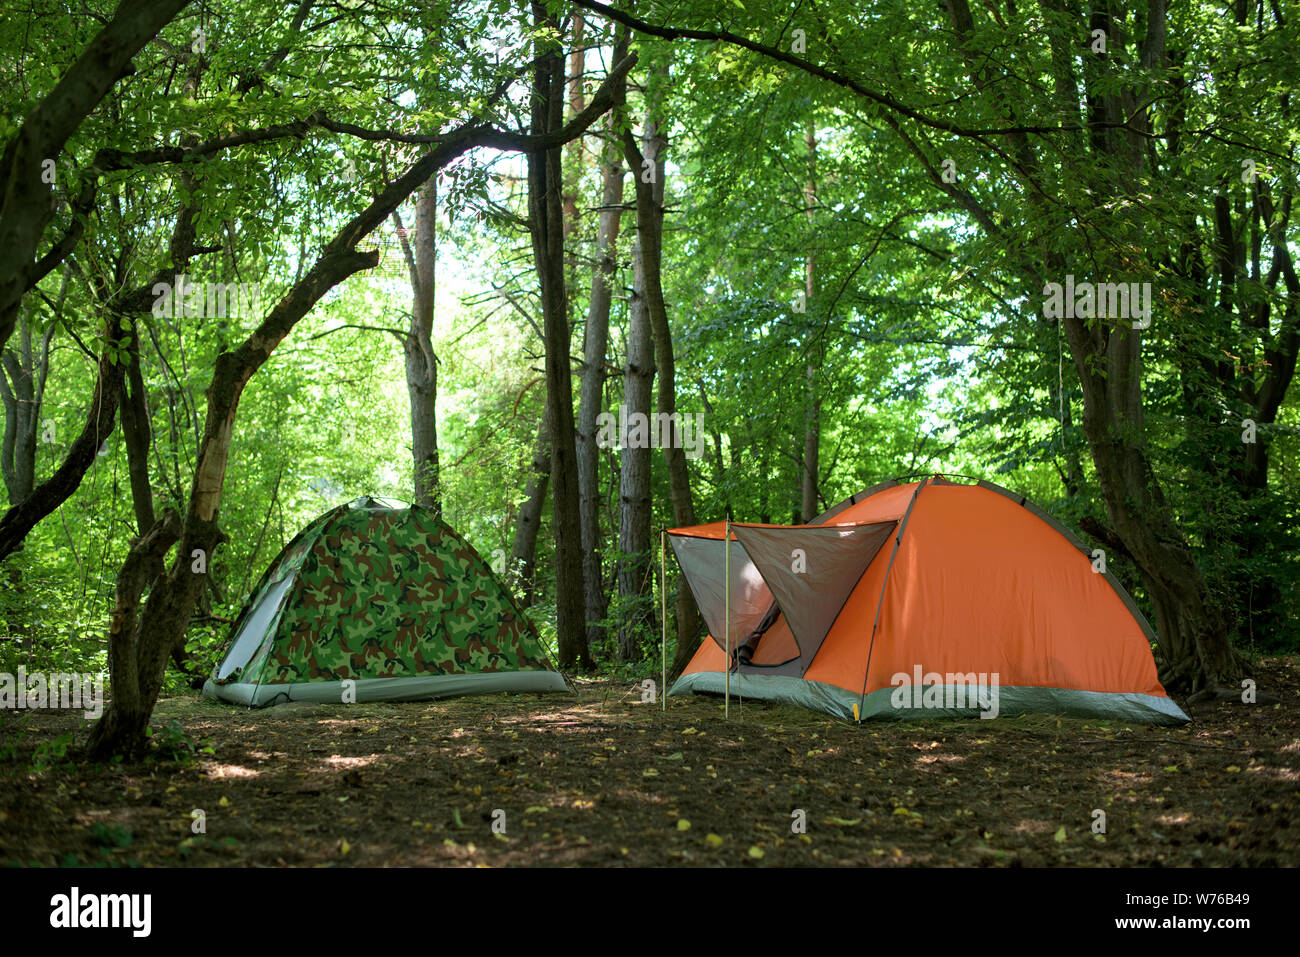 Zelten - zwei Zelte - eine orange und eine Tarnung Zelt unter den Eichen  Stockfotografie - Alamy